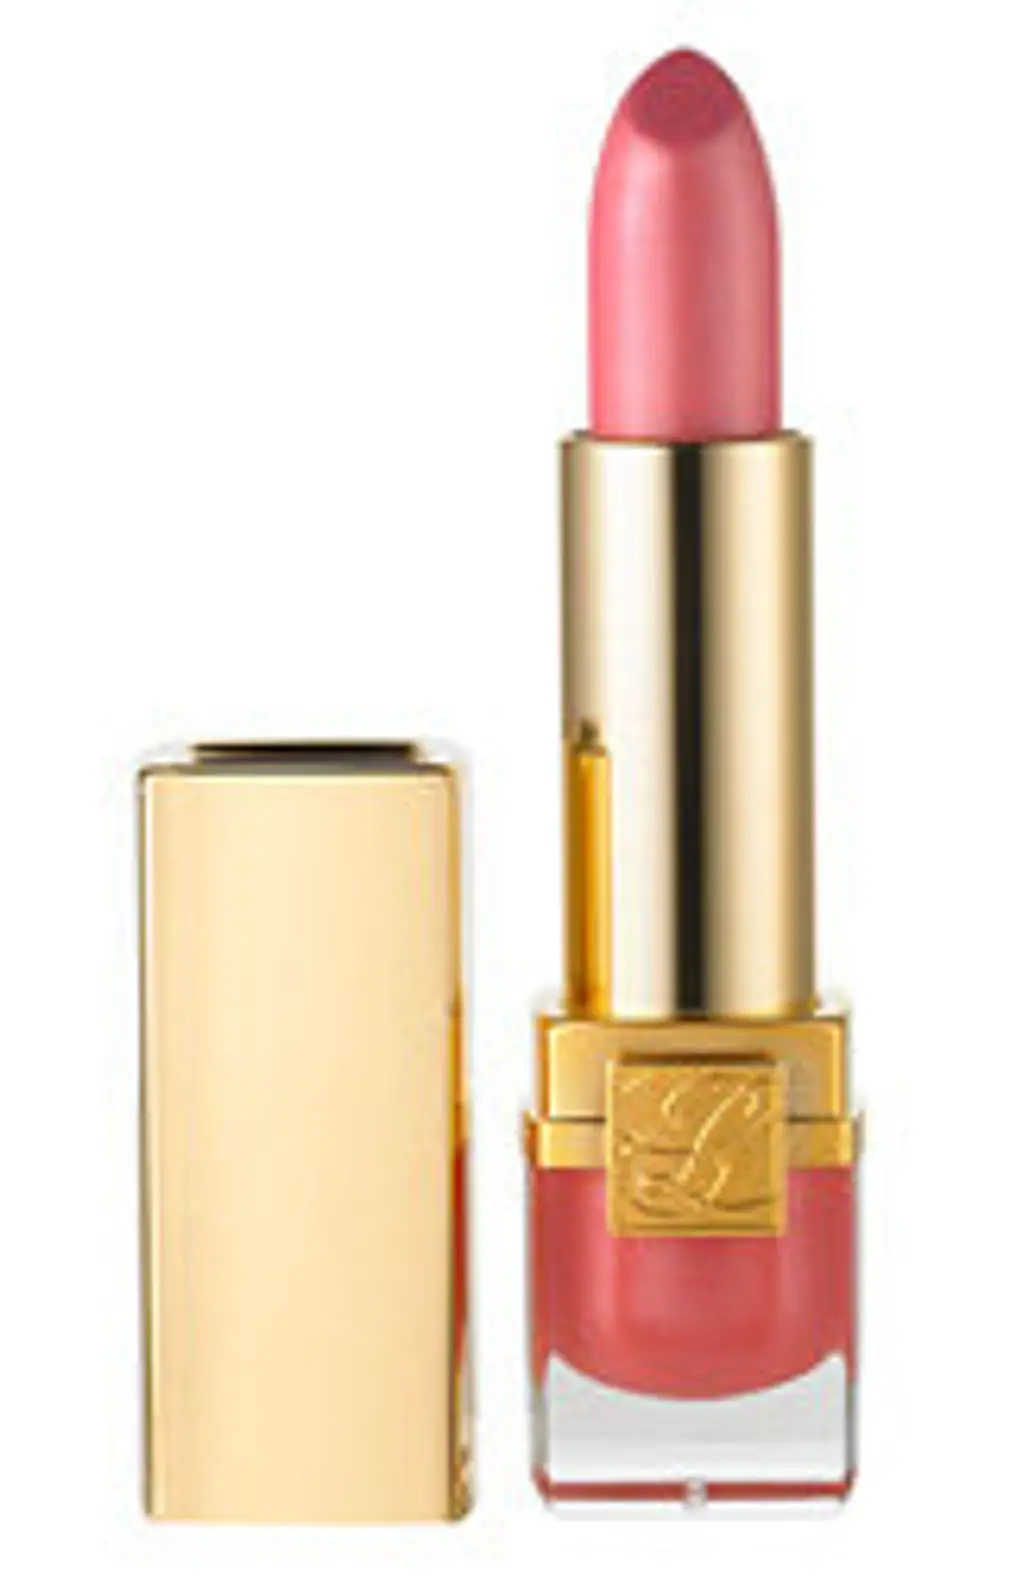 Estee Lauder Pure Color Lipstick in Pink Parfait